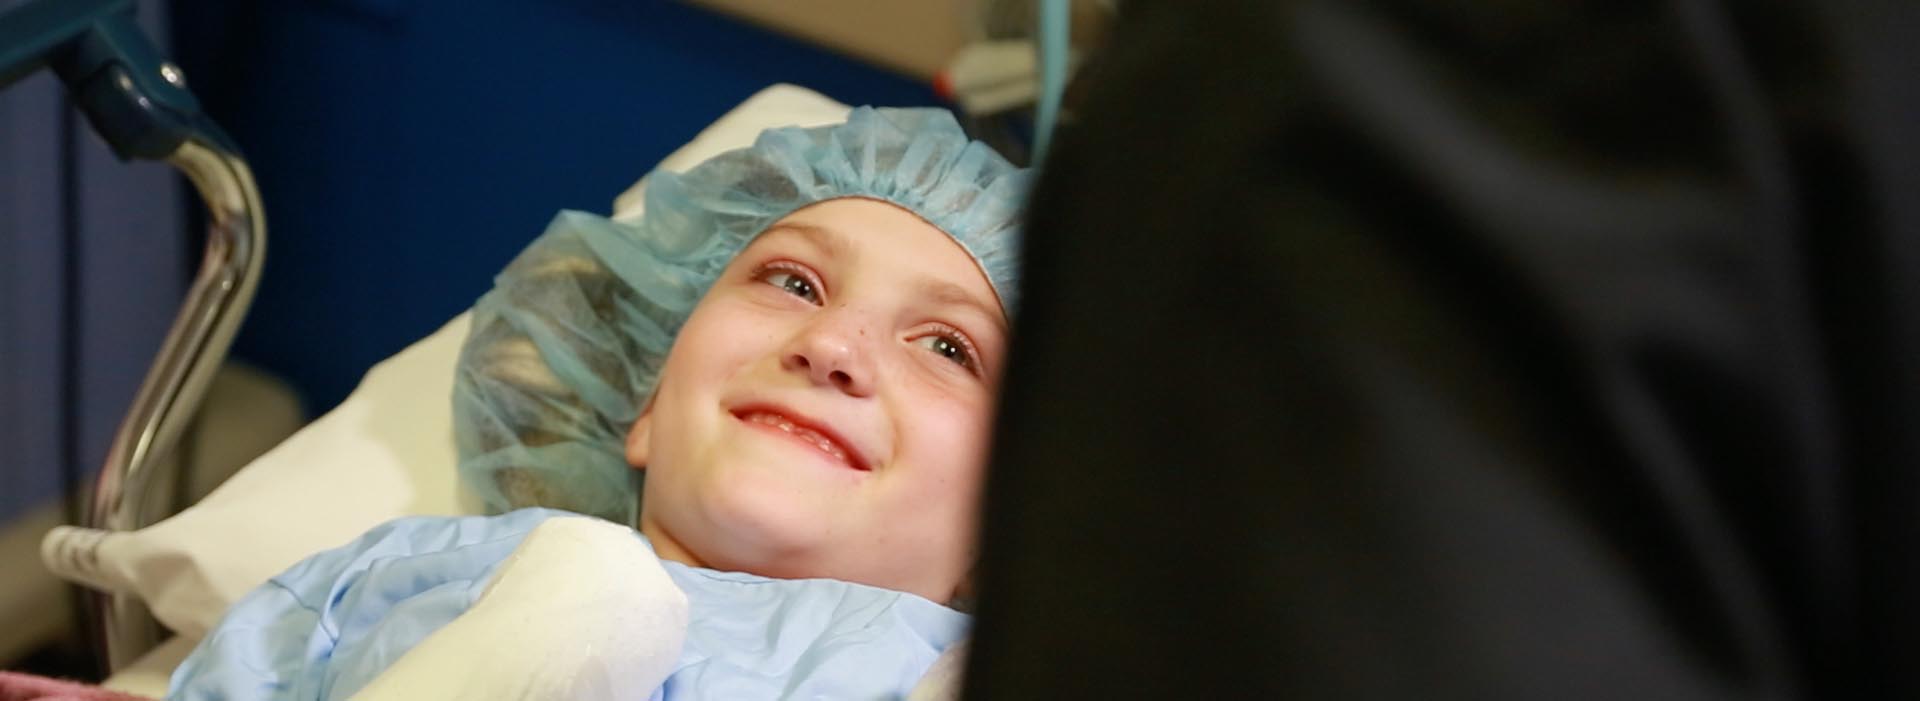 एक छोटा बच्चा मरीज फ्रेम से बाहर किसी को देखकर मुस्कुराता है